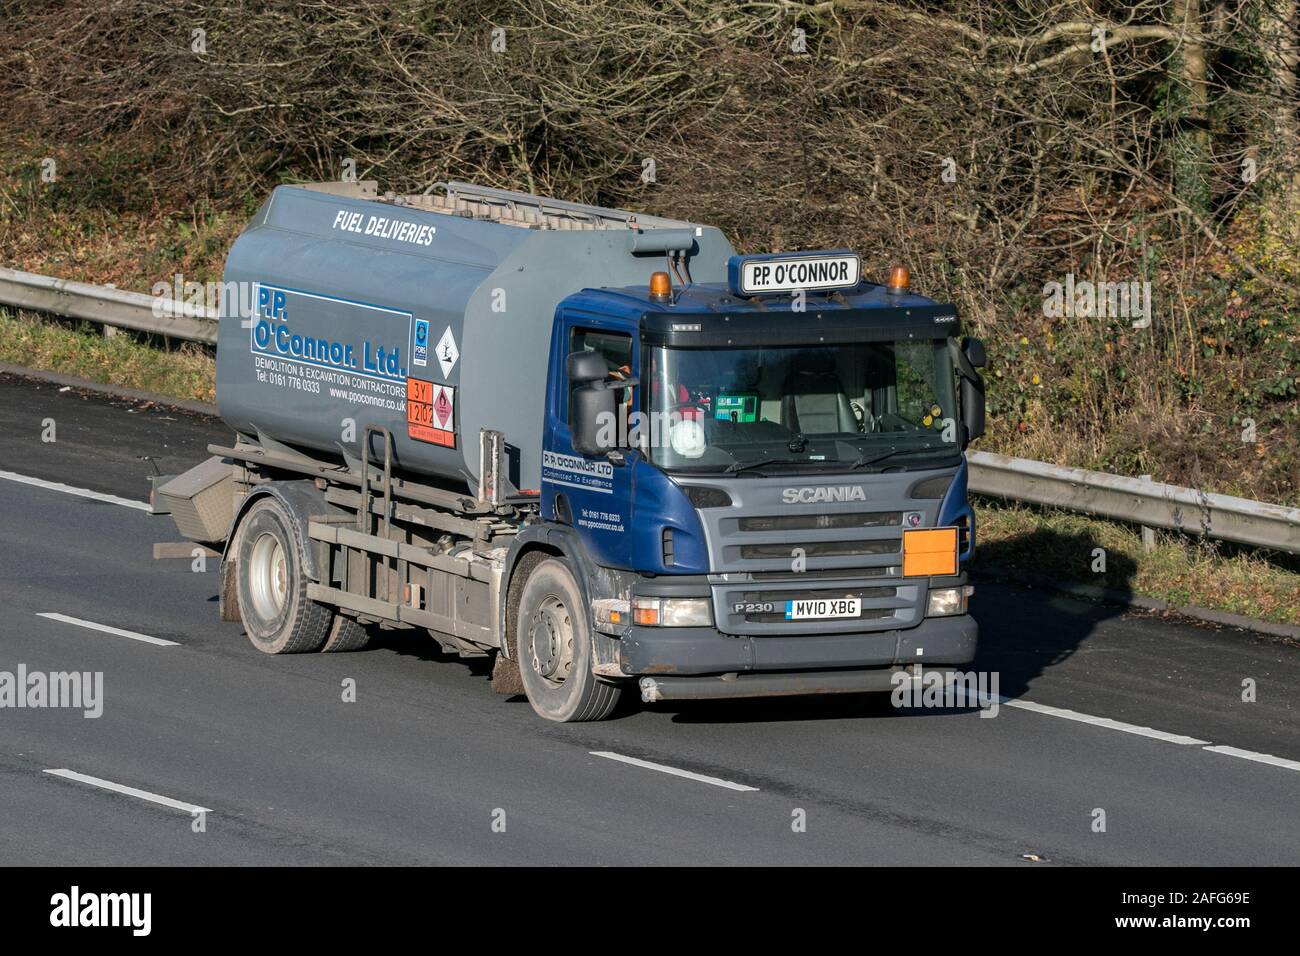 PP O'Connor demolizione appaltatori Scania corpo rigido della guida su M61 Autostrada vicino a Manchester, Regno Unito Foto Stock